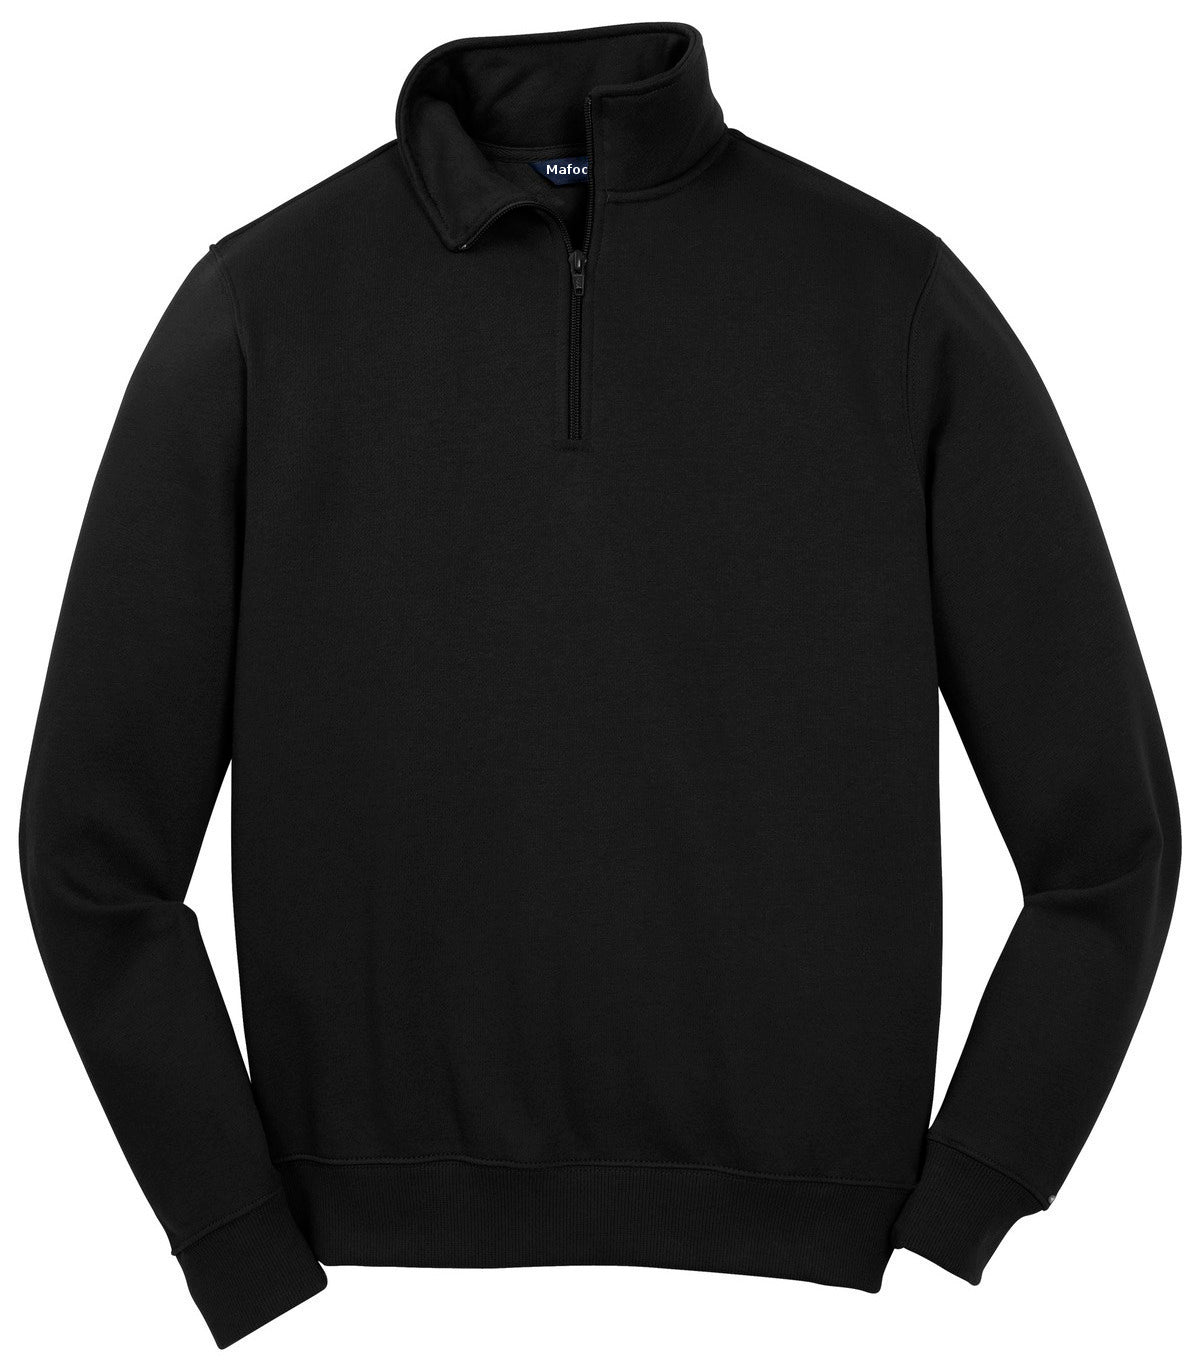 Men's 1/4 Zip Sweatshirt – Mafoose.com